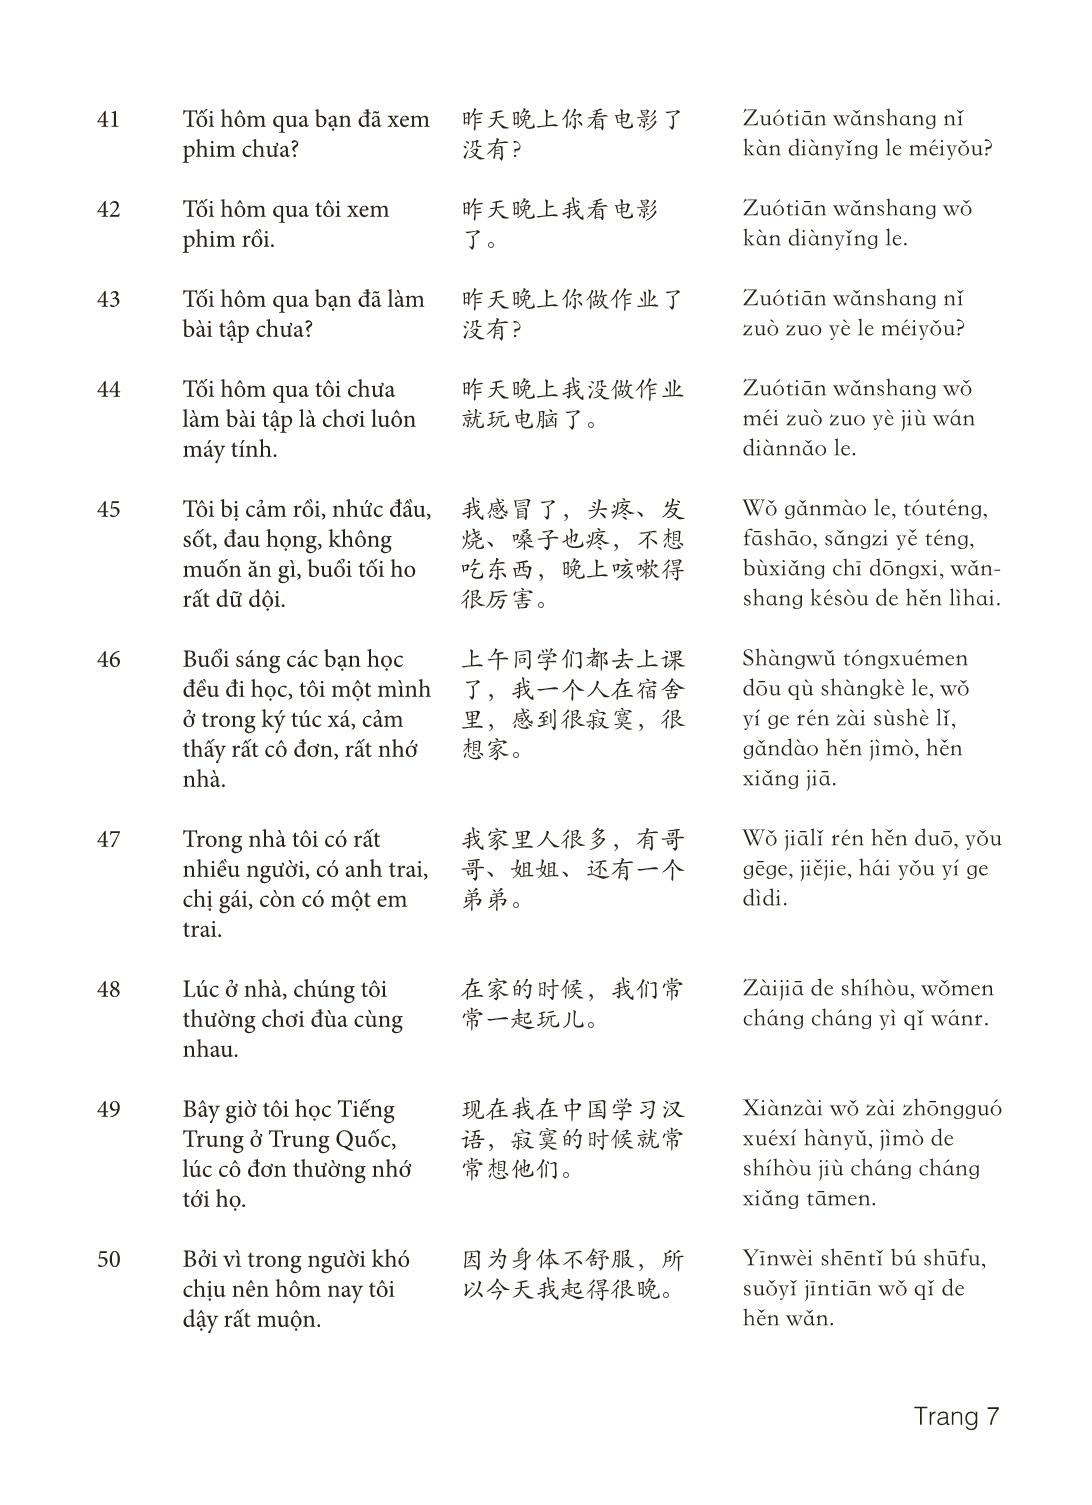 3000 Câu đàm thoại tiếng Hoa - Phần 10 trang 7